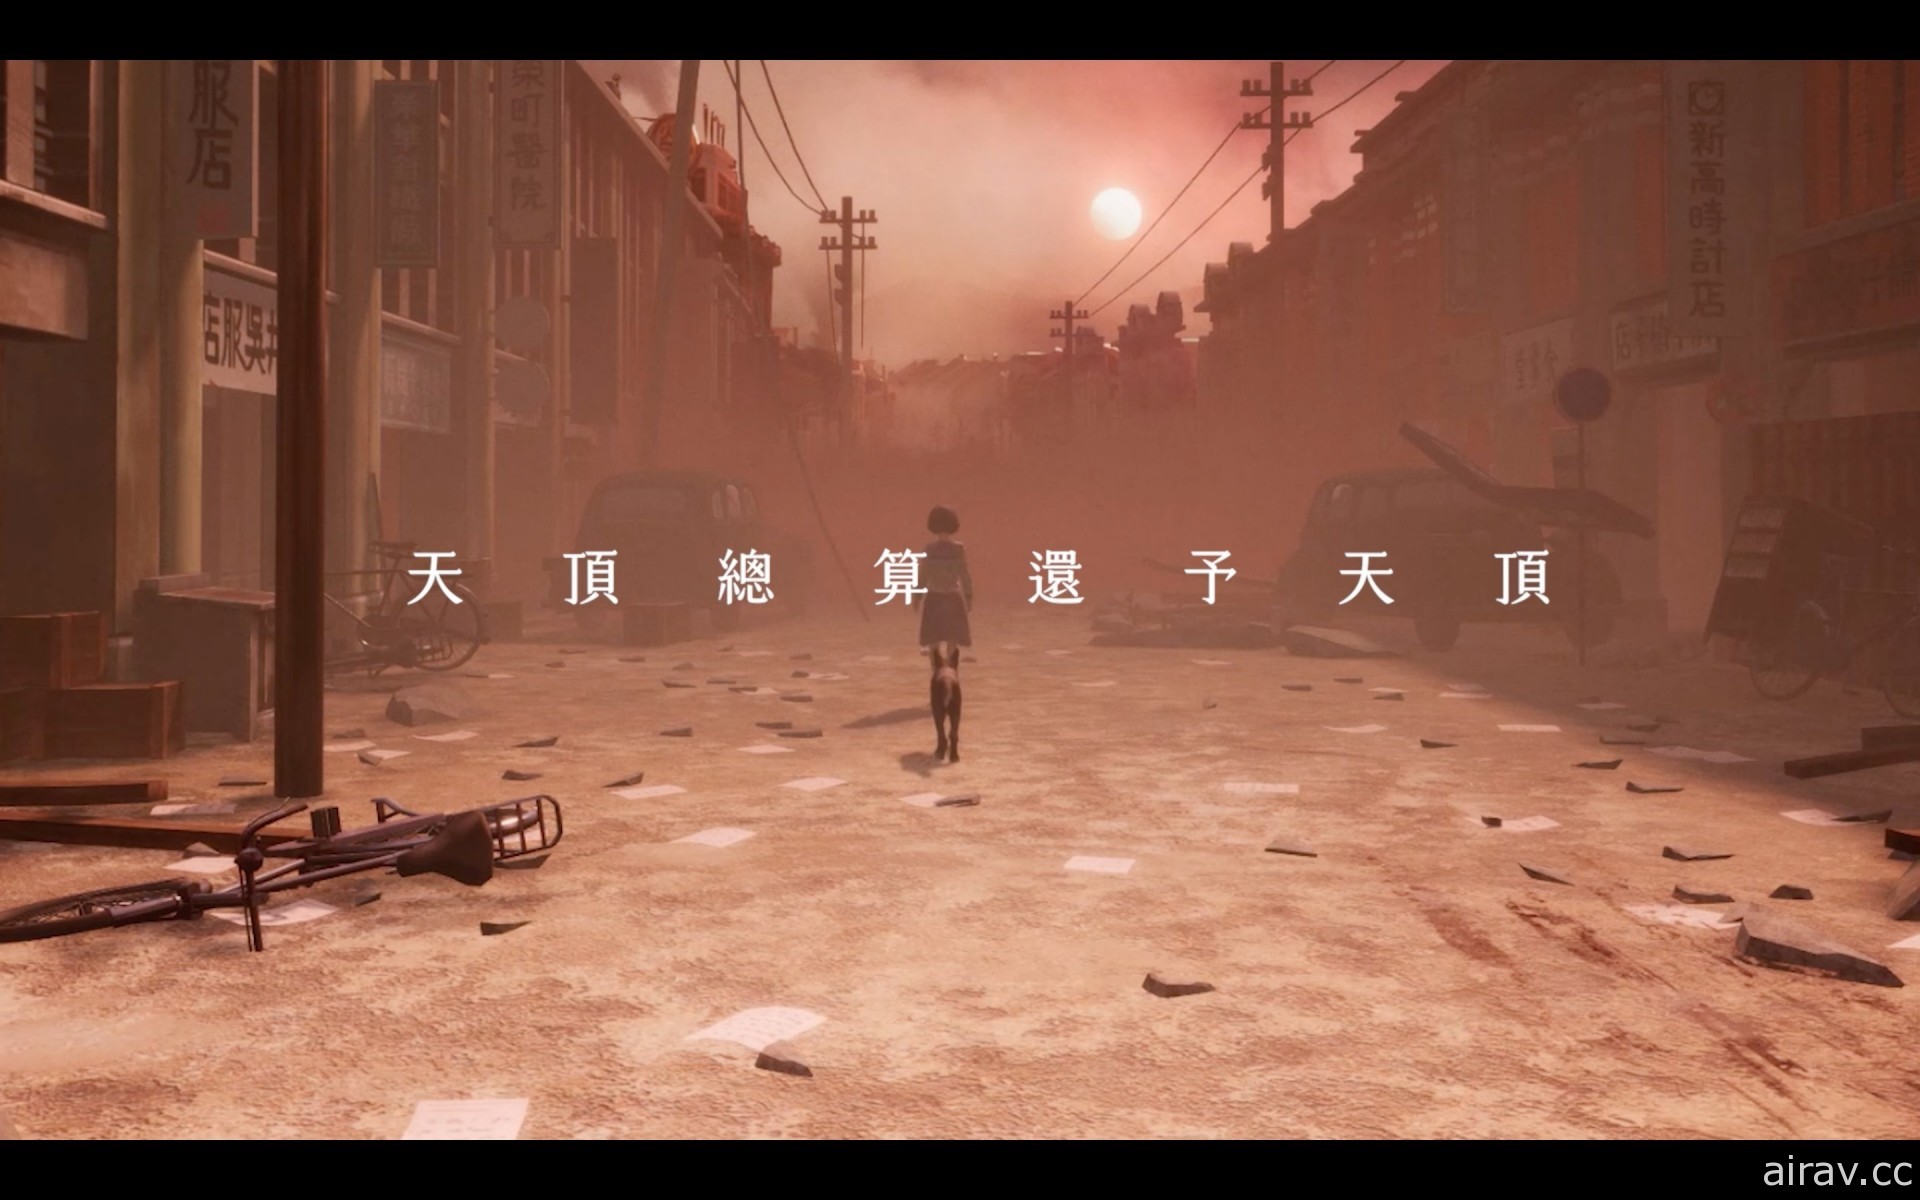 桌遊同名改編遊戲《台北大空襲》公開片尾主題曲前導宣傳影片